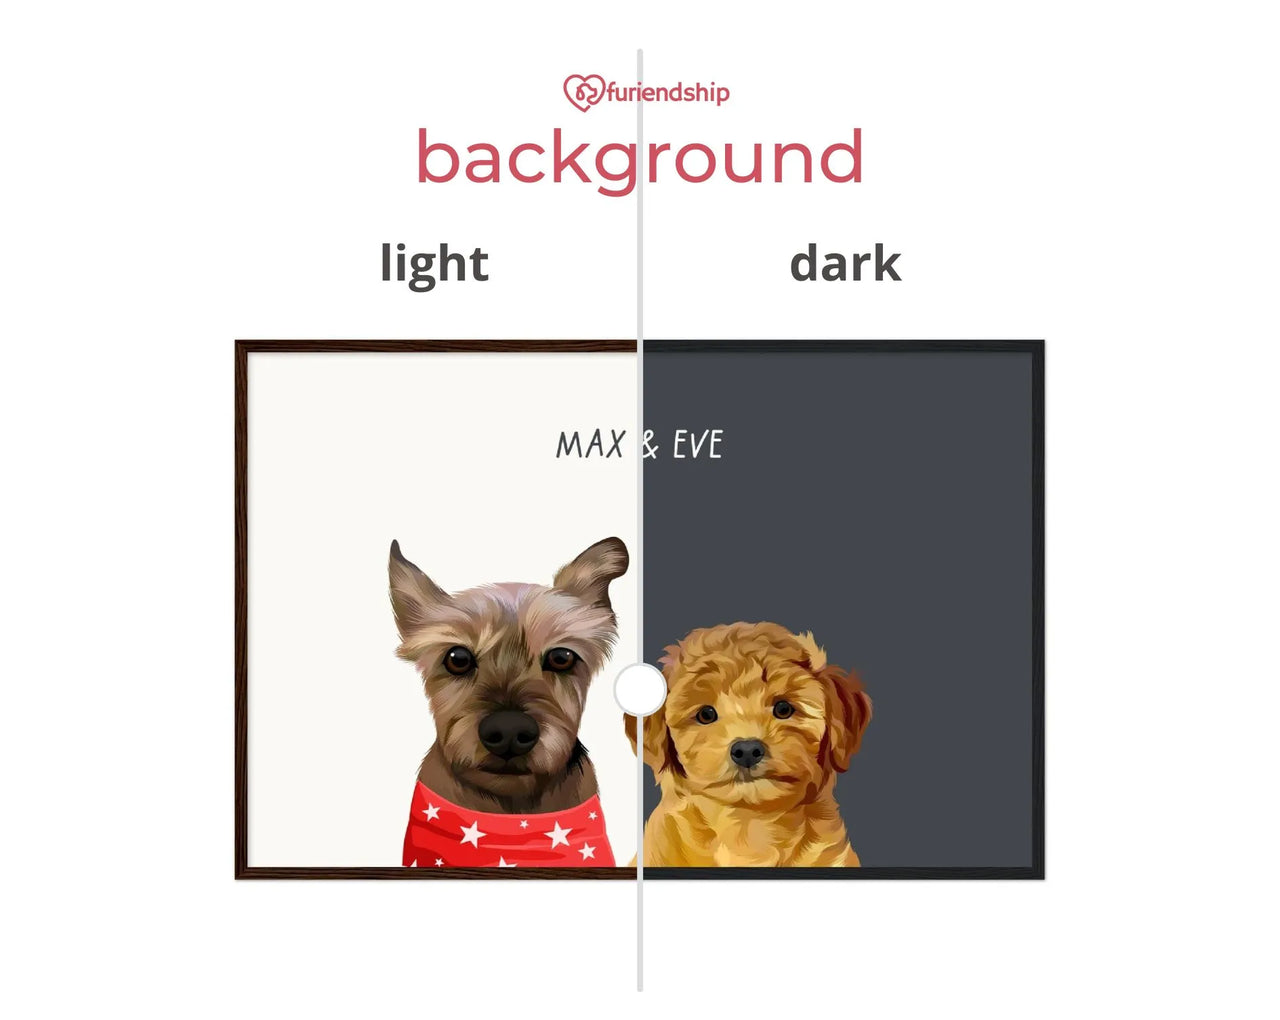 Furiendship dark and light portrait background comparison